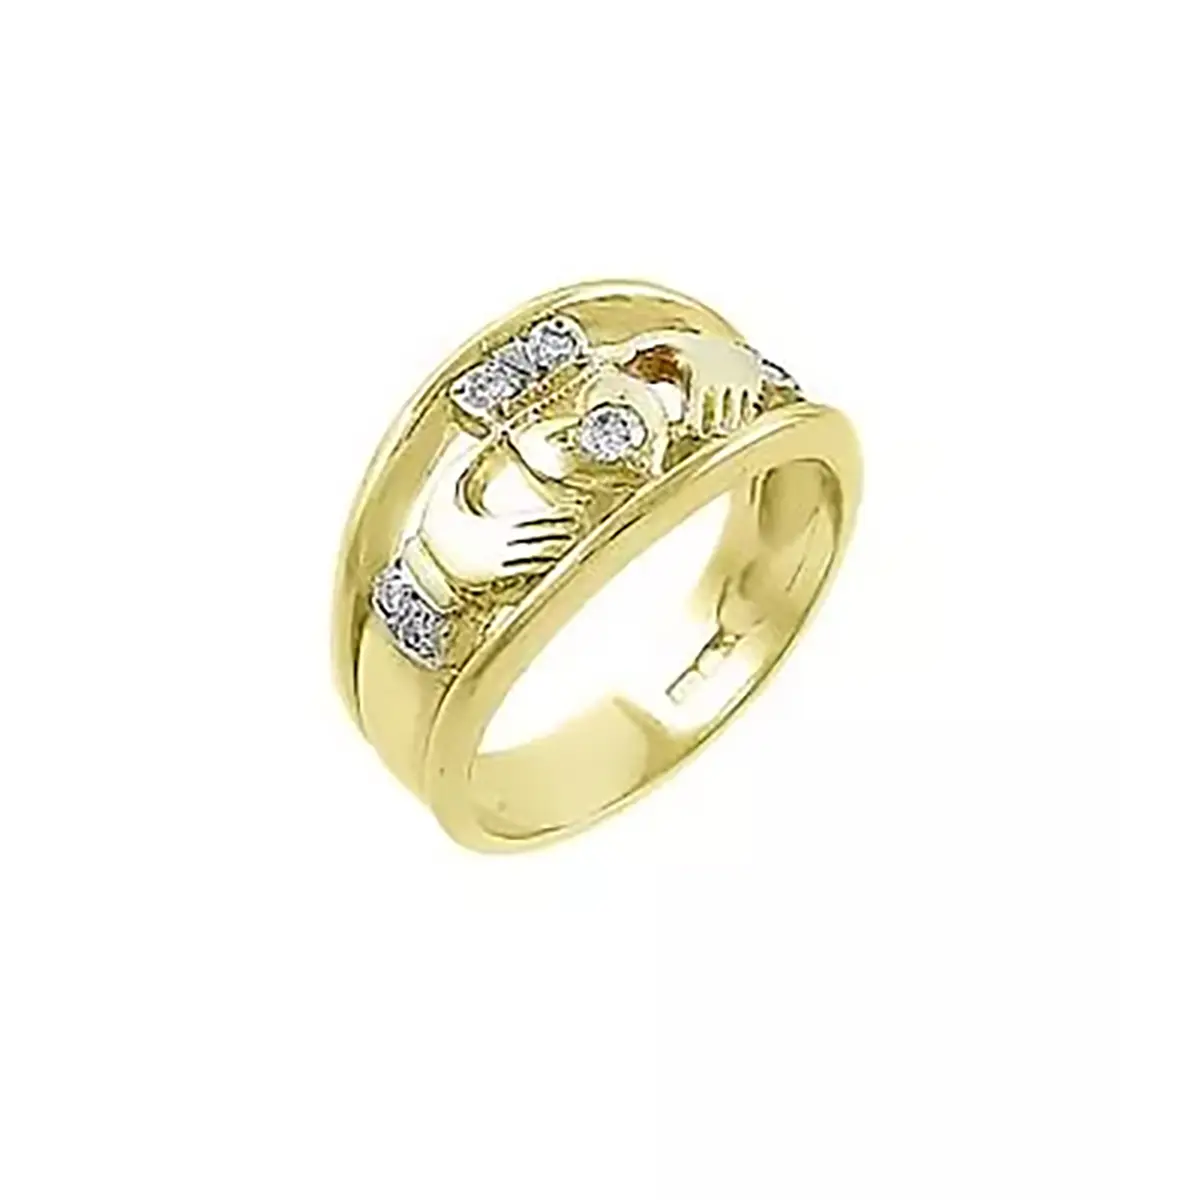 Gold Brilliant Cut Diamond Claddagh Ring